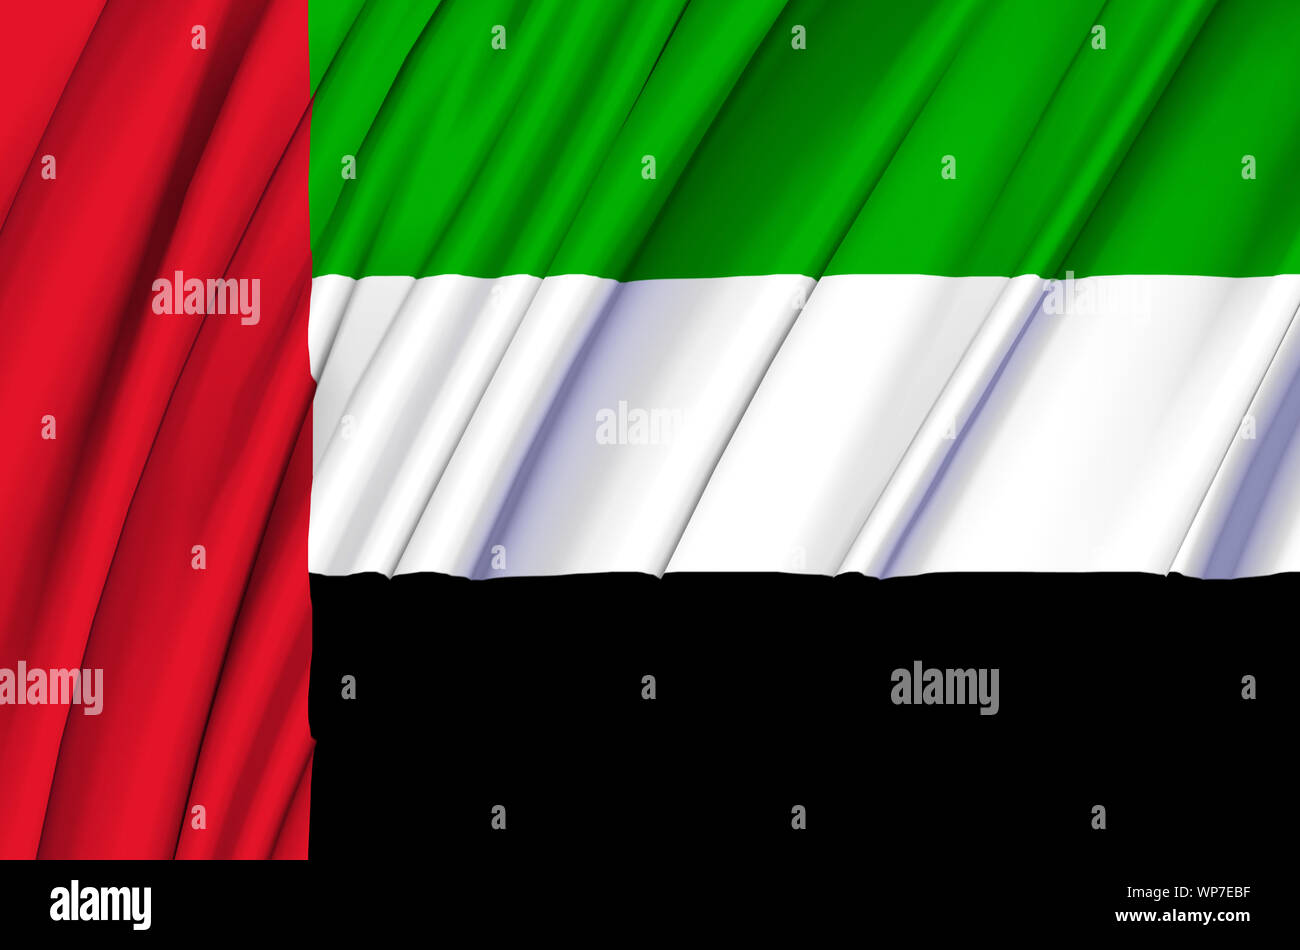 Bạn hãy tưởng tượng khi nhìn thấy lá cờ UAE xô đẩy trong gió, tất cả cho đến khi nó được thổi mạnh lên cao. Đó là một hình ảnh cực kì đẹp và ý nghĩa, và bây giờ bạn có thể nhìn thấy cảnh tượng đó thông qua hình ảnh lá cờ vẫy trong gió mà chúng tôi cung cấp.